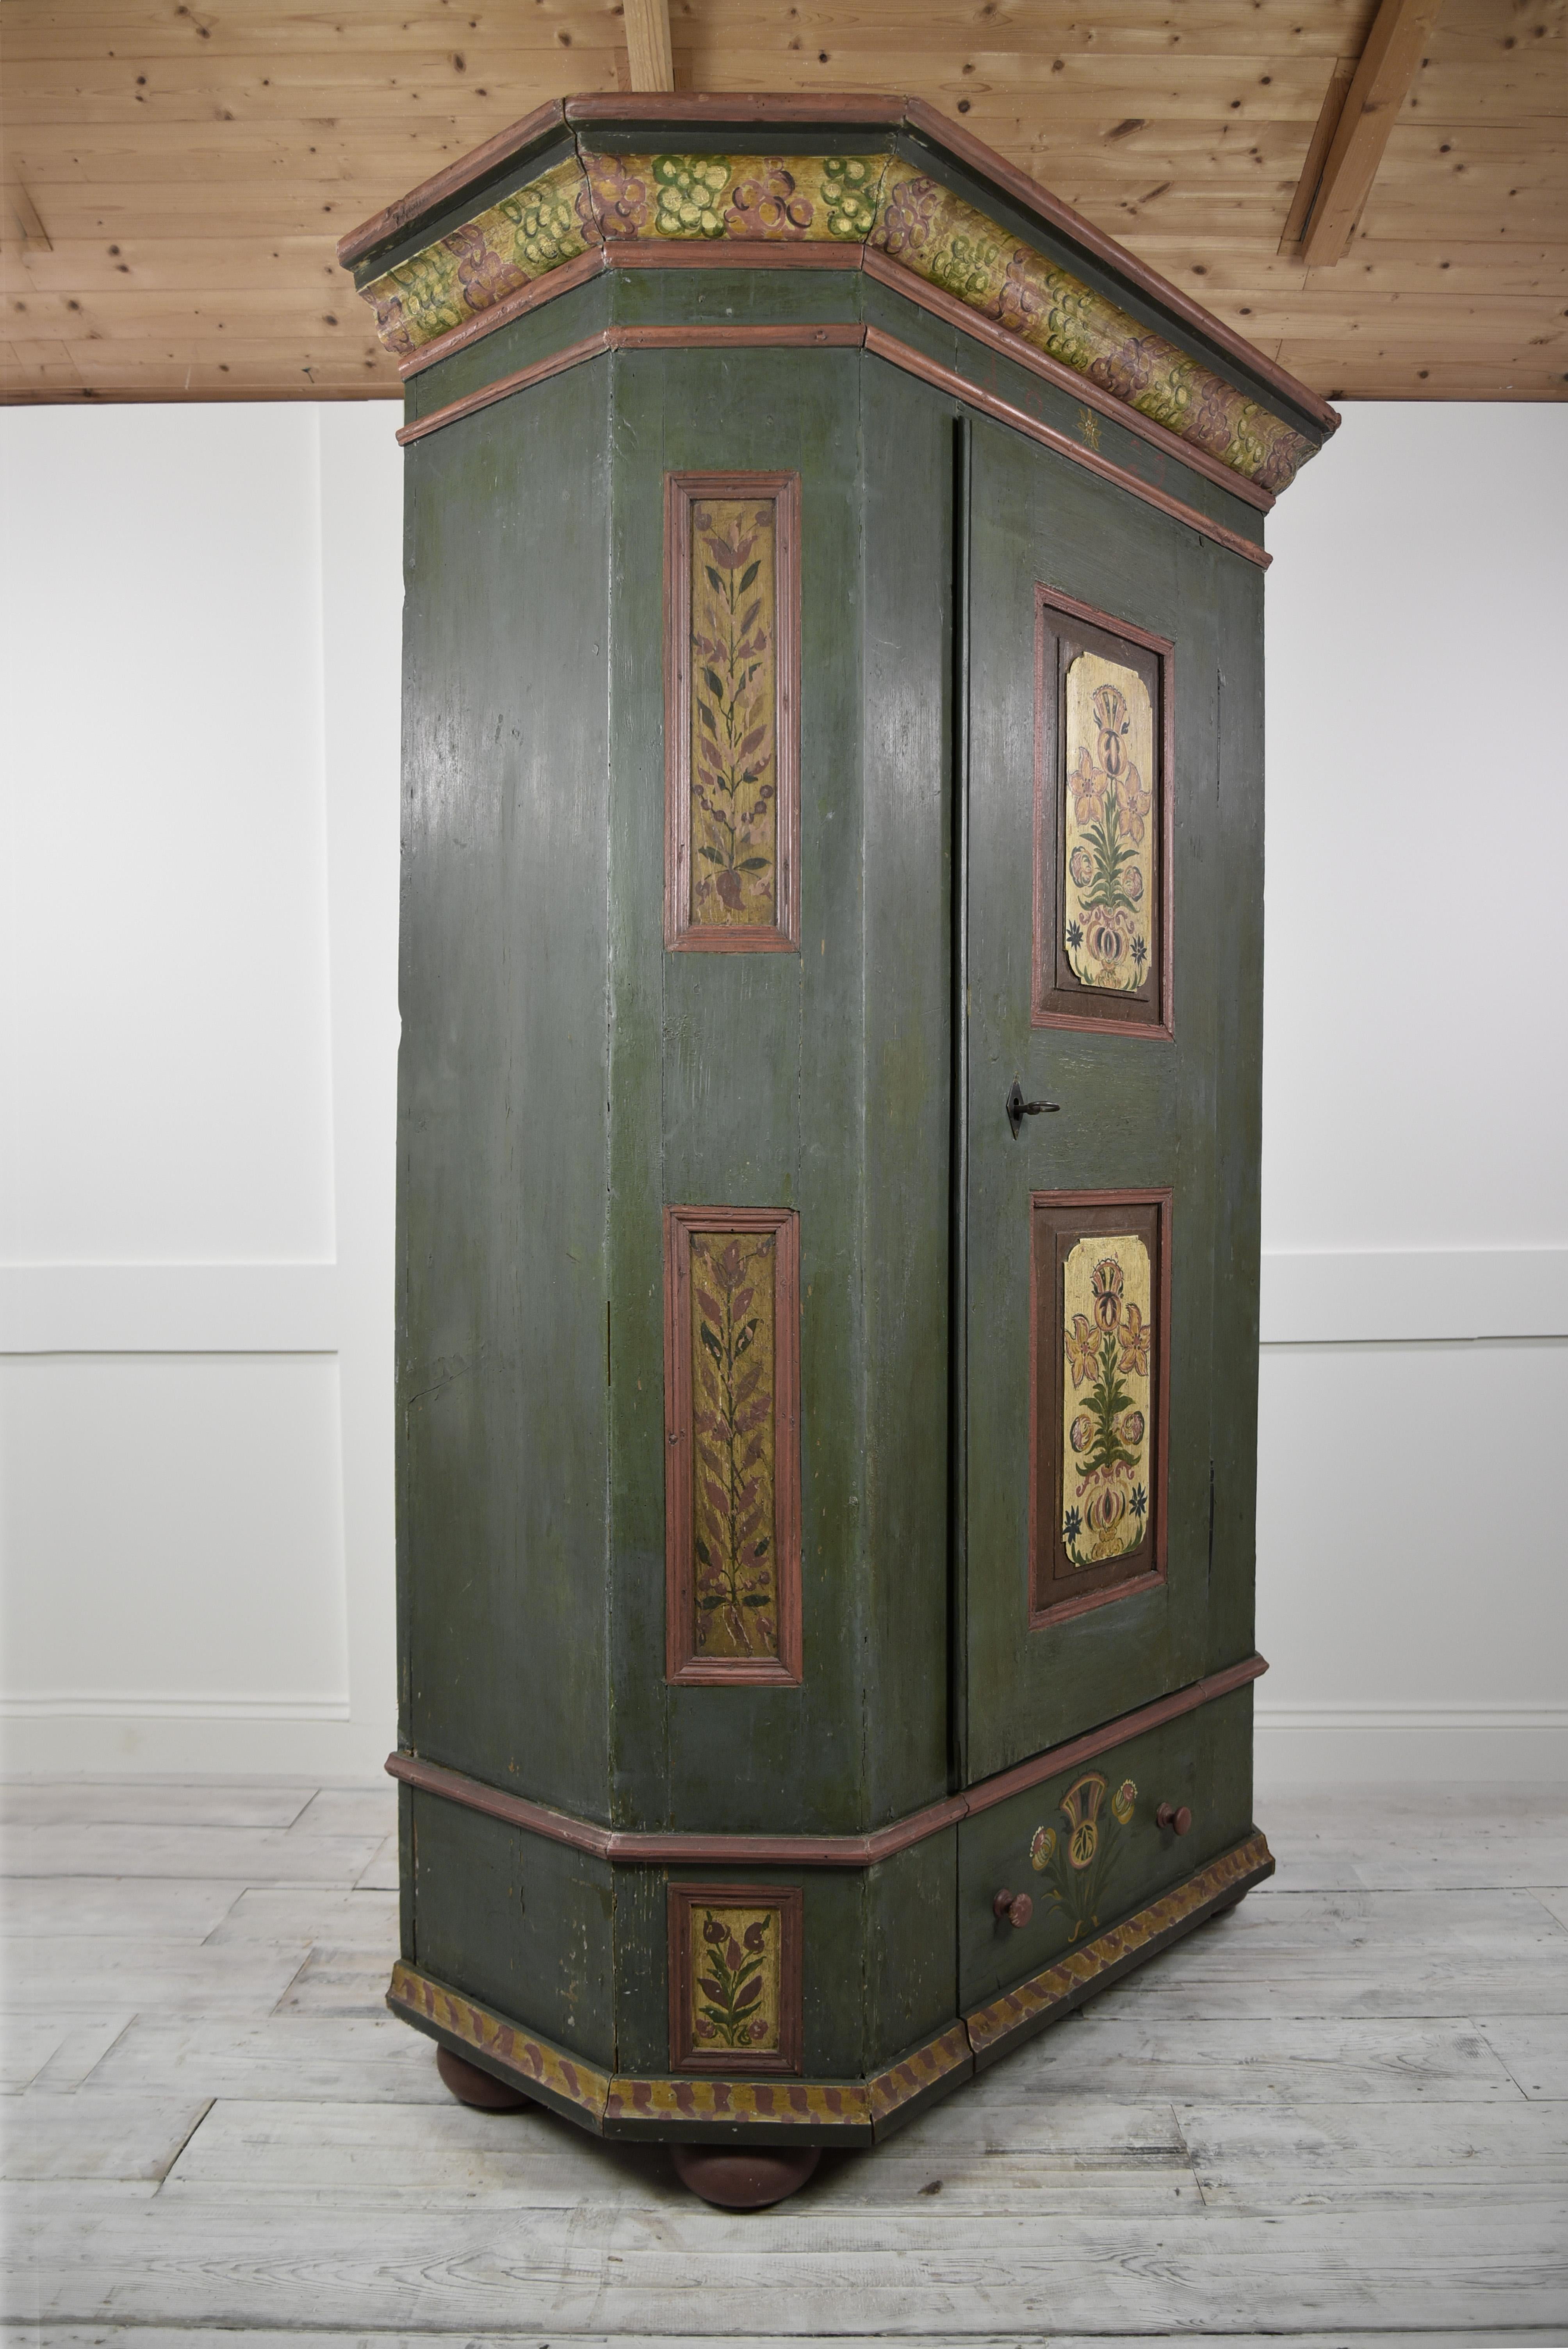 Cette armoire à dot de mariage tyrolienne a probablement été fabriquée par un ébéniste local et peinte par un peintre local. Ces magnifiques armoires étaient fabriquées en bois de pin local et étaient réservées pour être offertes comme un cadeau